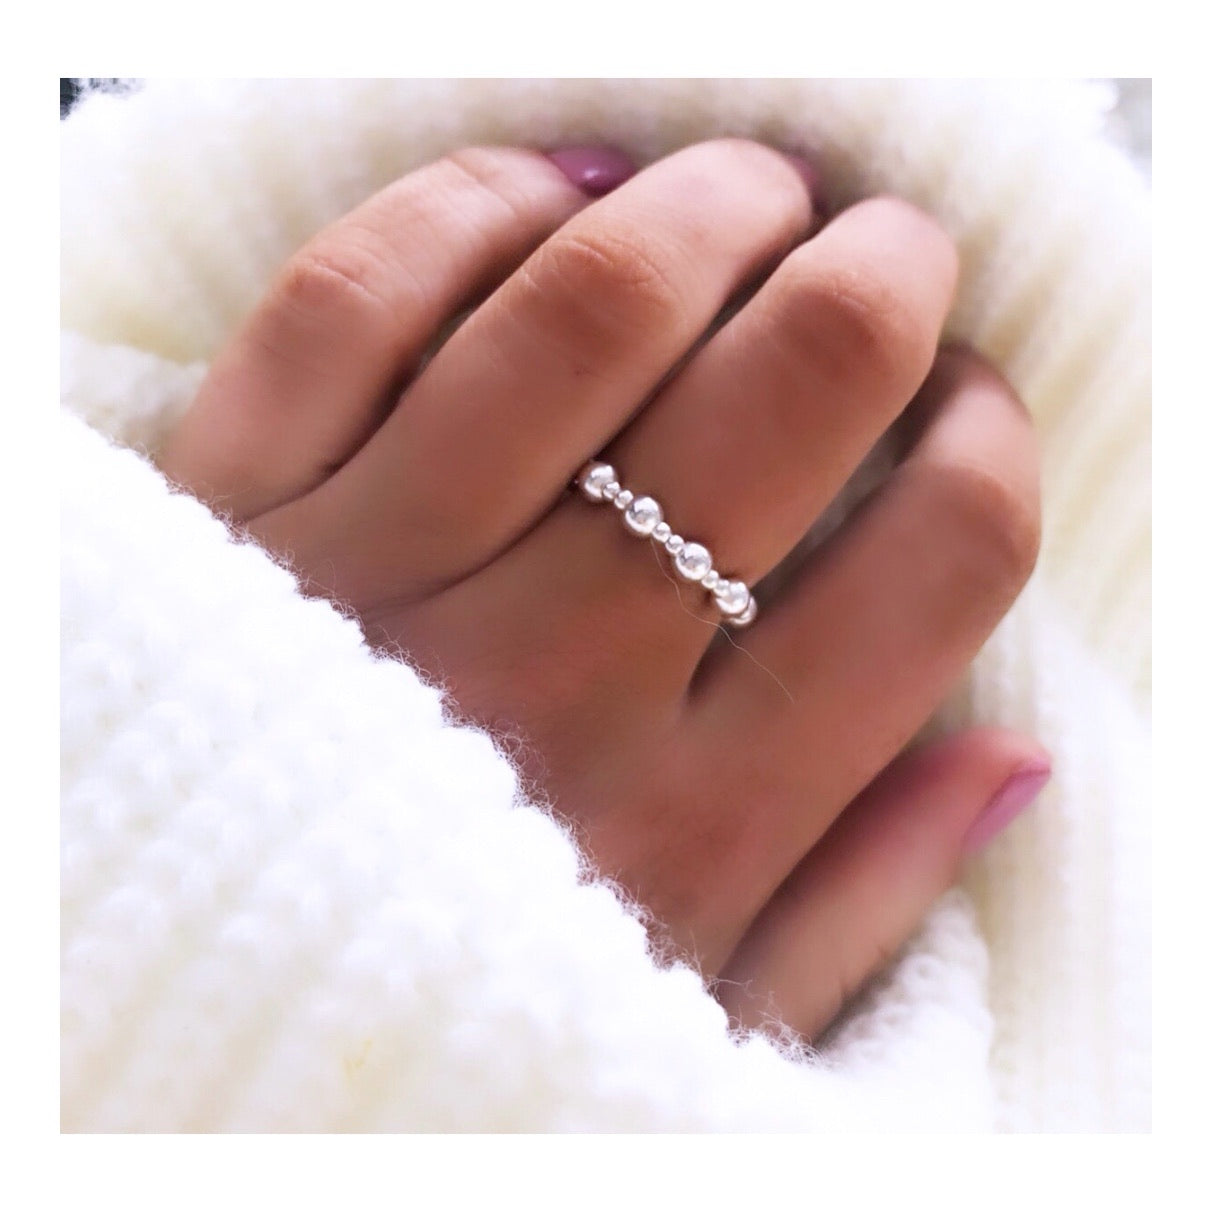 The Elsie Ring